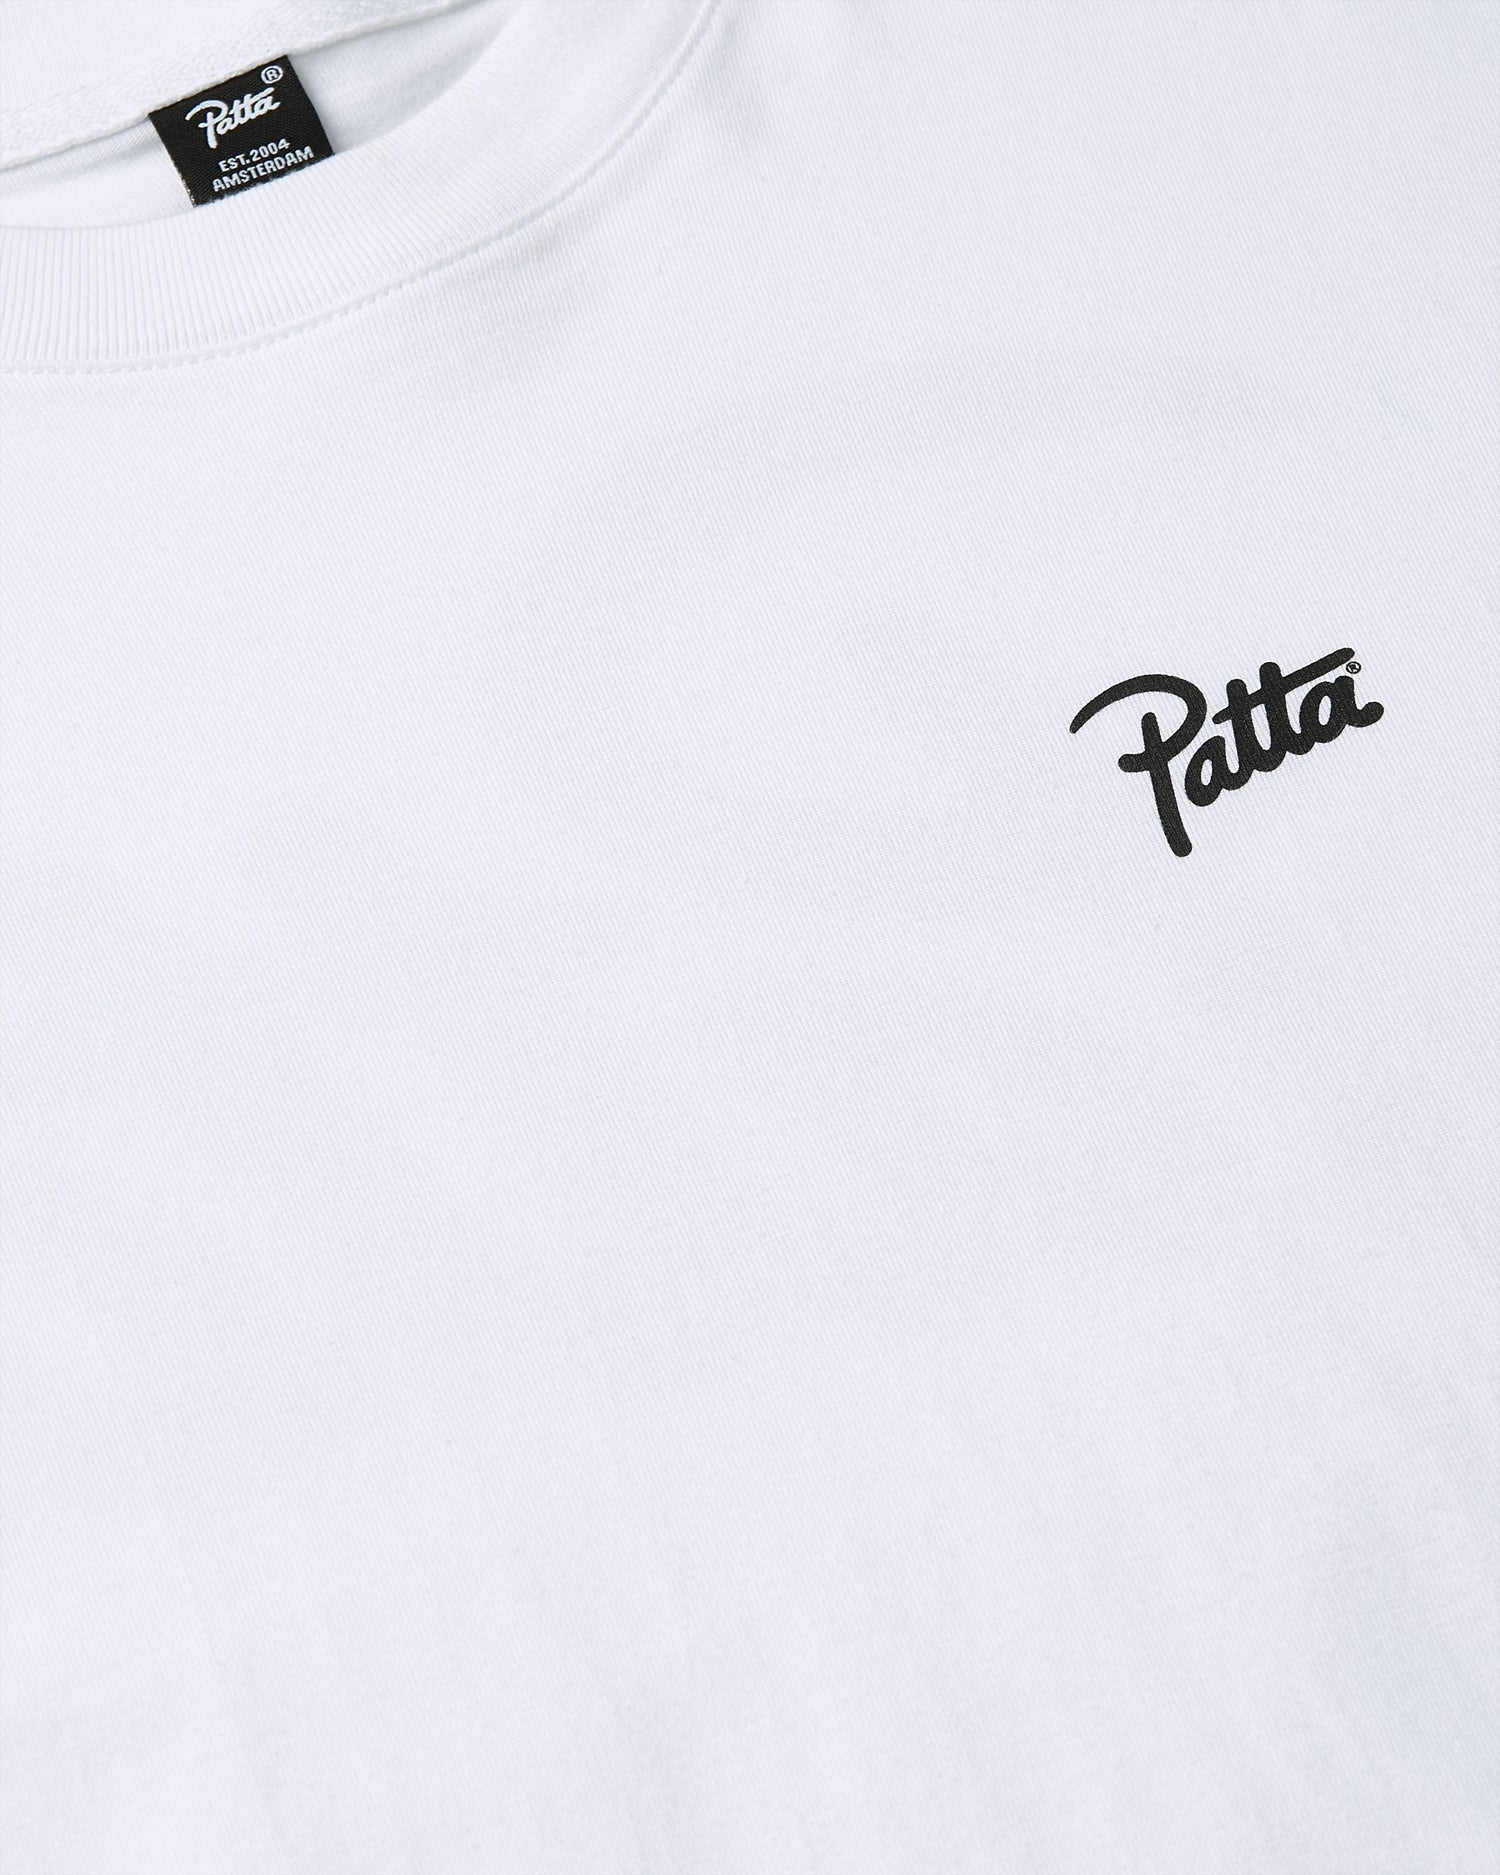 Patta Pattamazona T-Shirt (Optic White)